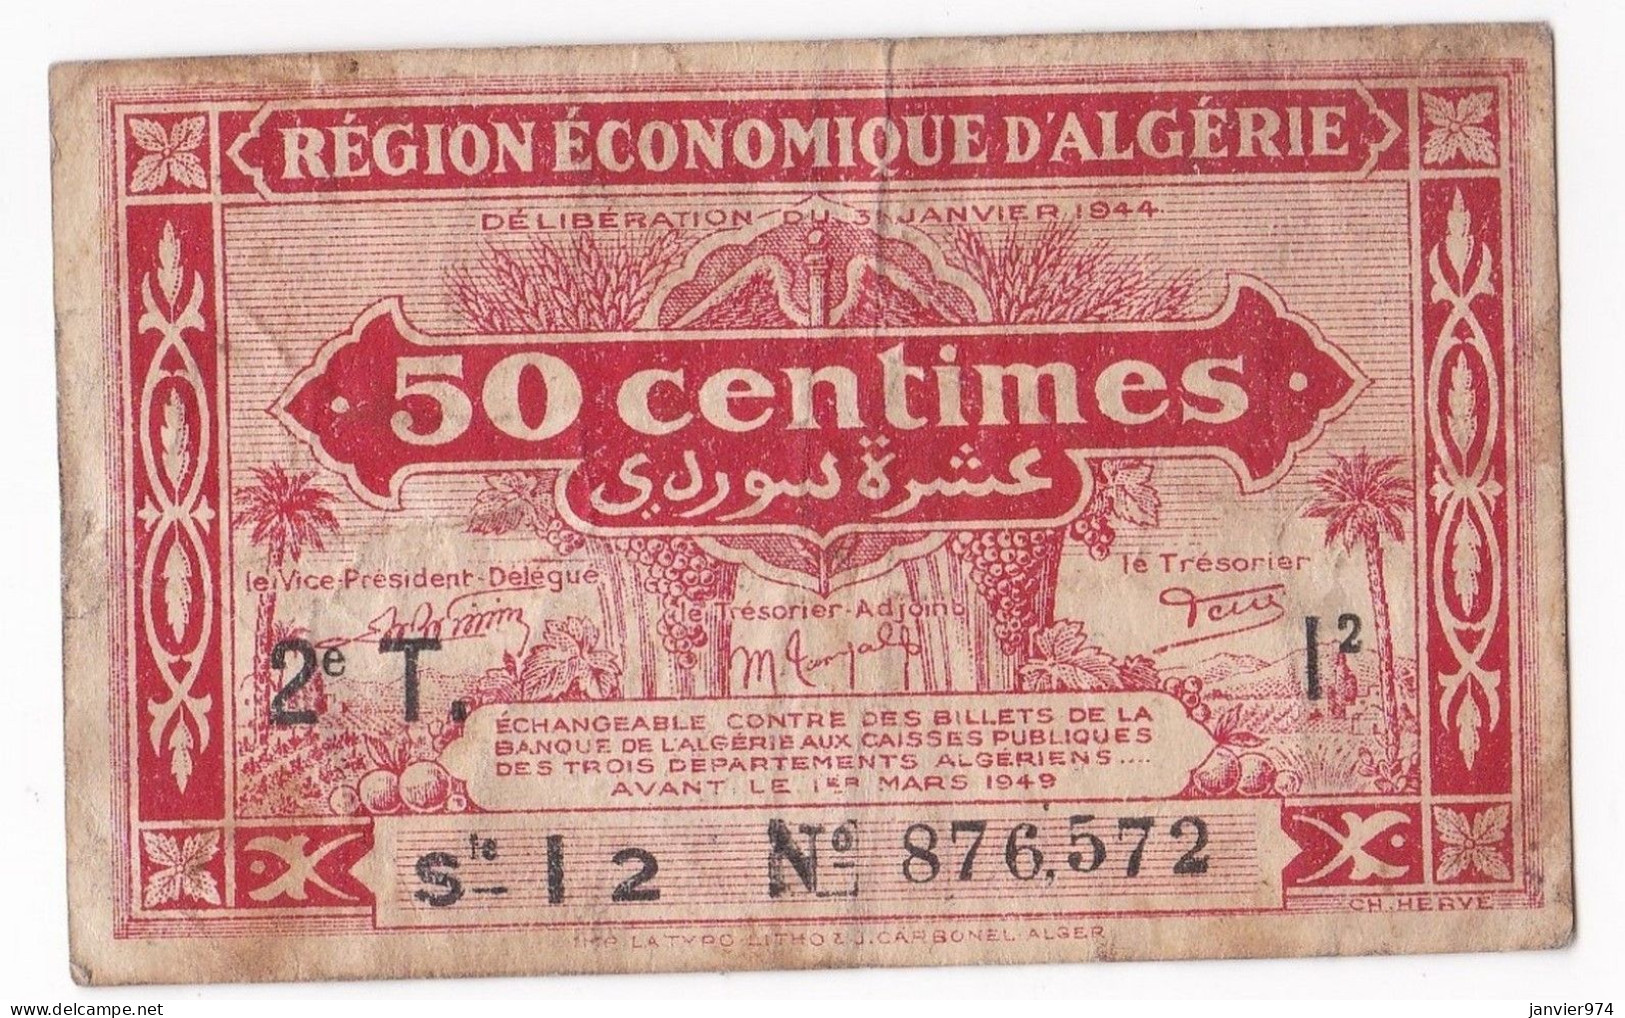 Région Economique D’Algérie 50 Centimes 1944, 2e T Serie I 2 N° 876572, Billet Colonial Circulé - Bons & Nécessité